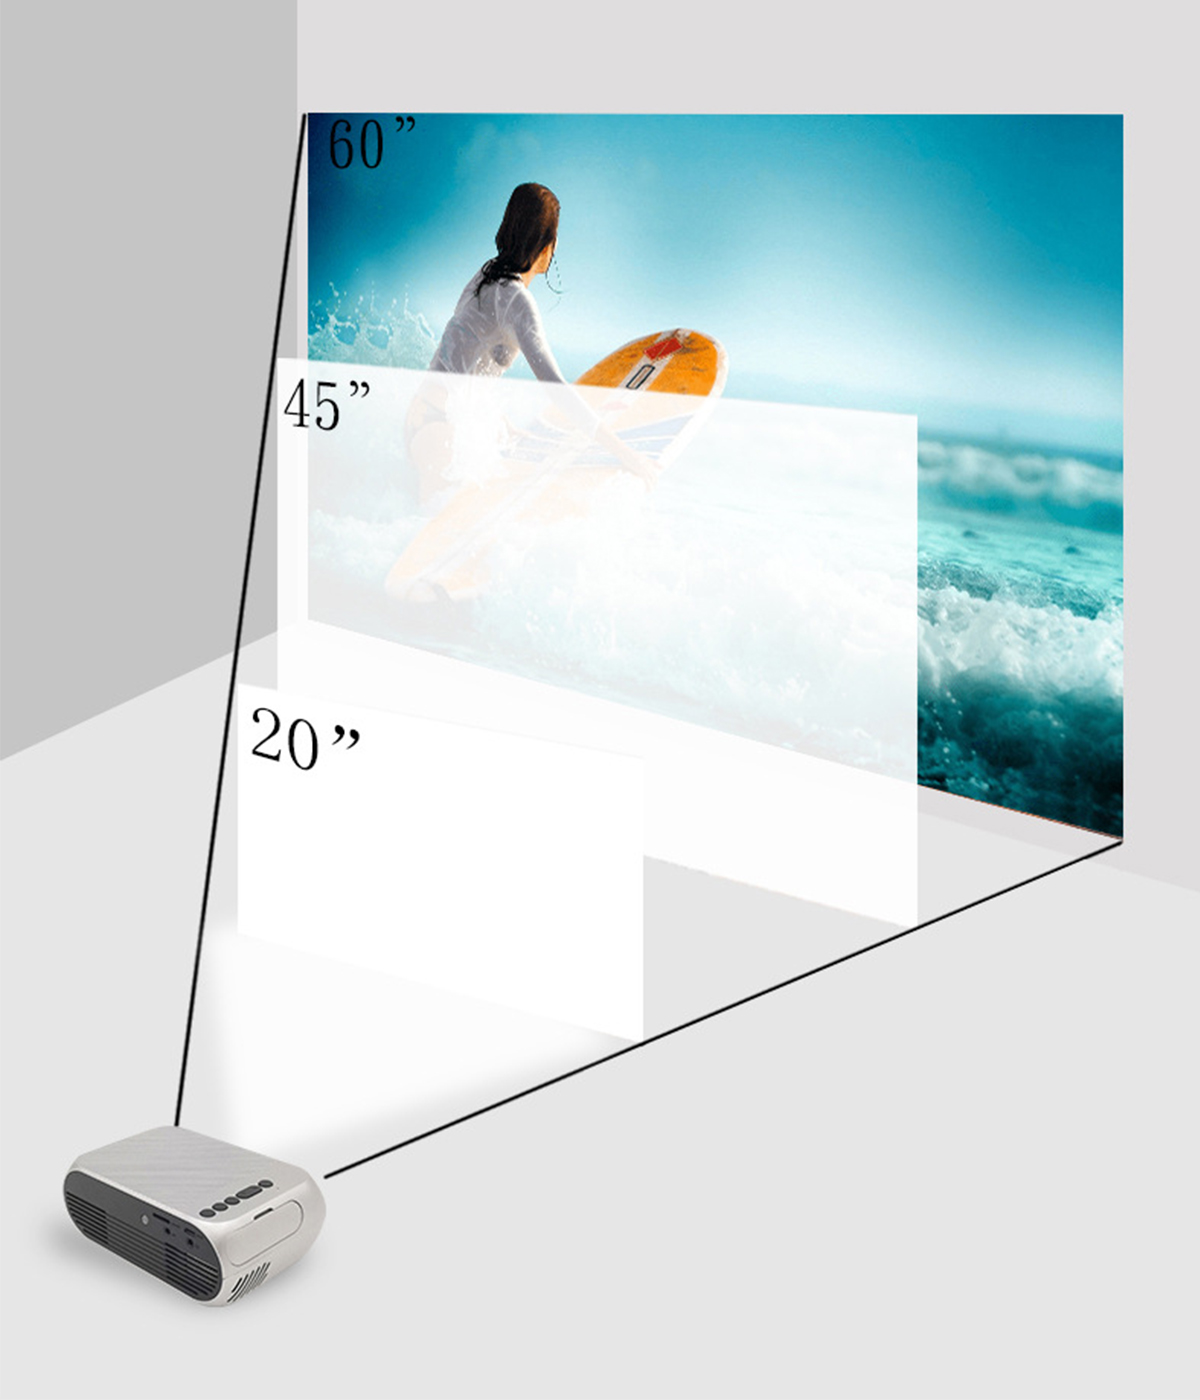 BRIGHTAKE Kompakter HD 1080P LED mit Lautsprechern Mini Beamer(HD+) Vielseitiger Konnektivität und Projektor Integrierten